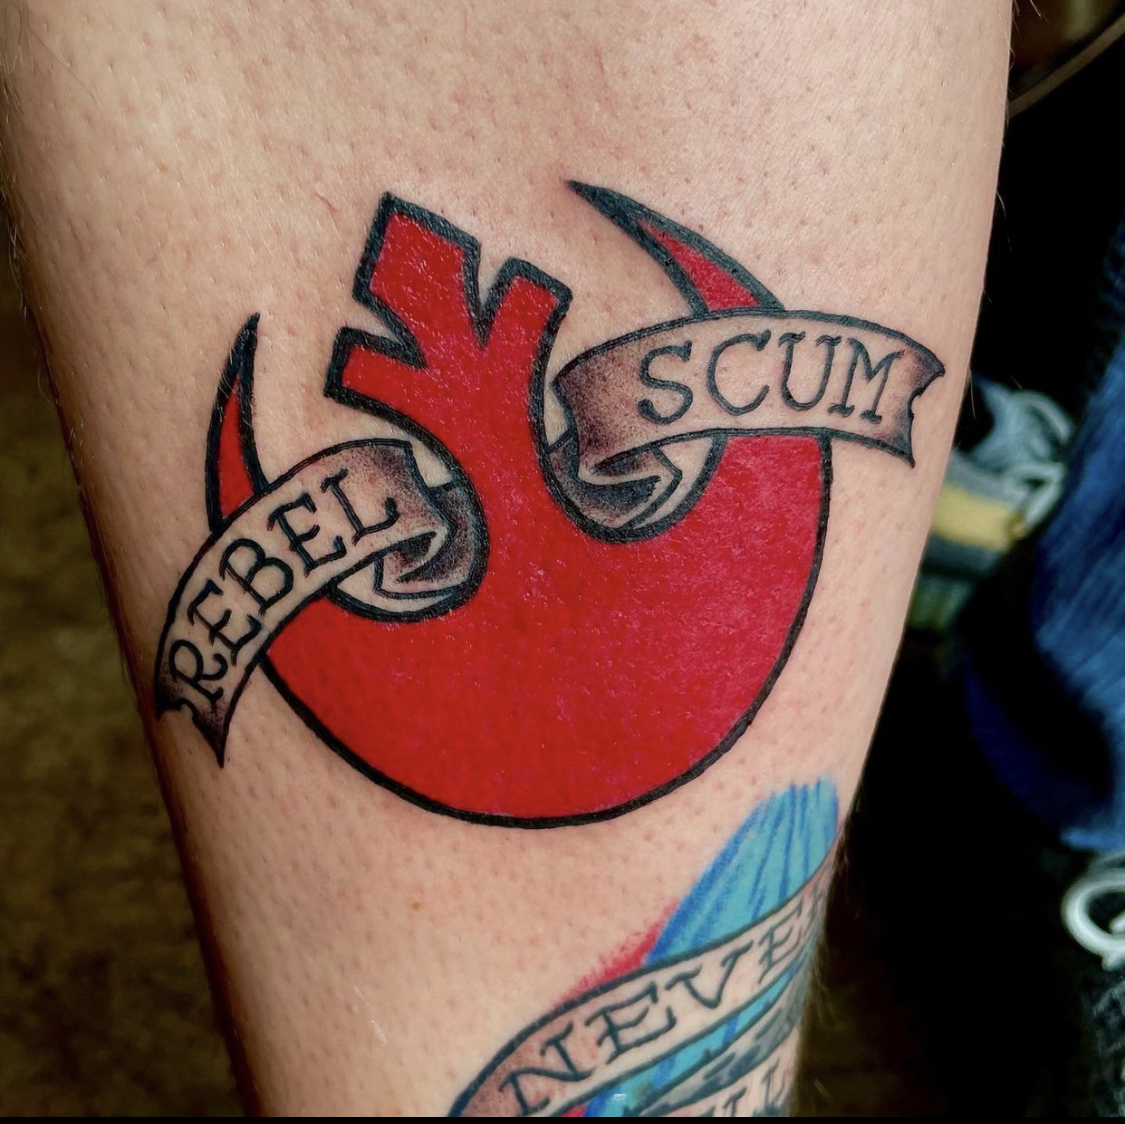 Rebel scum tattoo from top Dallas tattoo artist